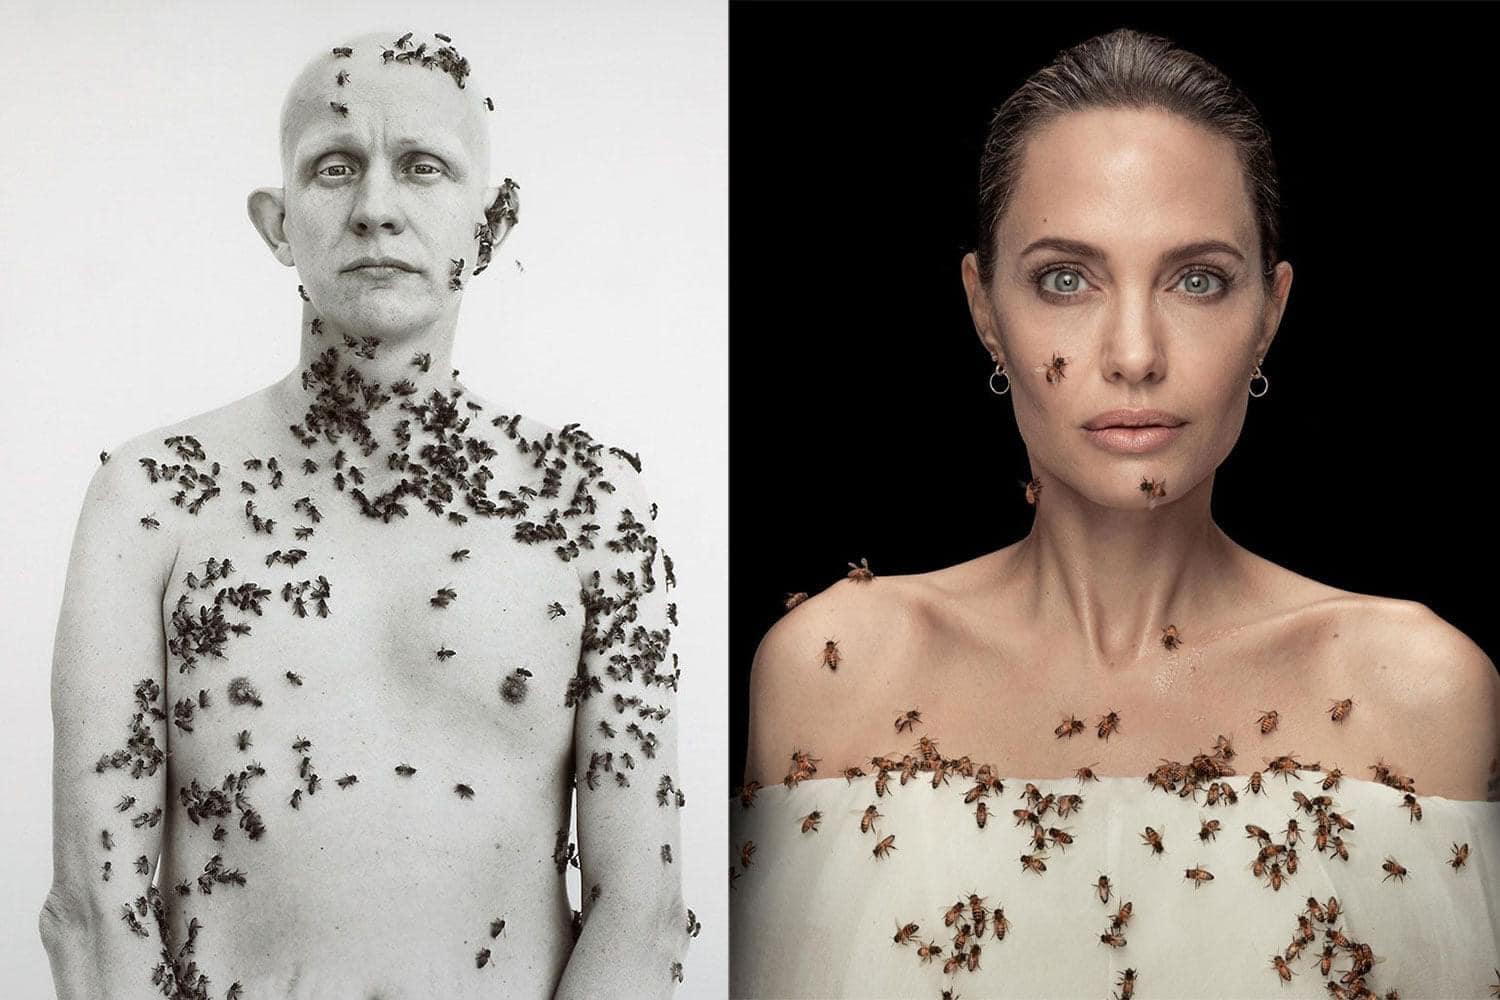 Cảm hứng cho bức hình của Angelian Jolie đến từ bức ảnh chân dung The Beekeeper của nhiếp ảnh gia Richard Avedon chụp năm 1981.